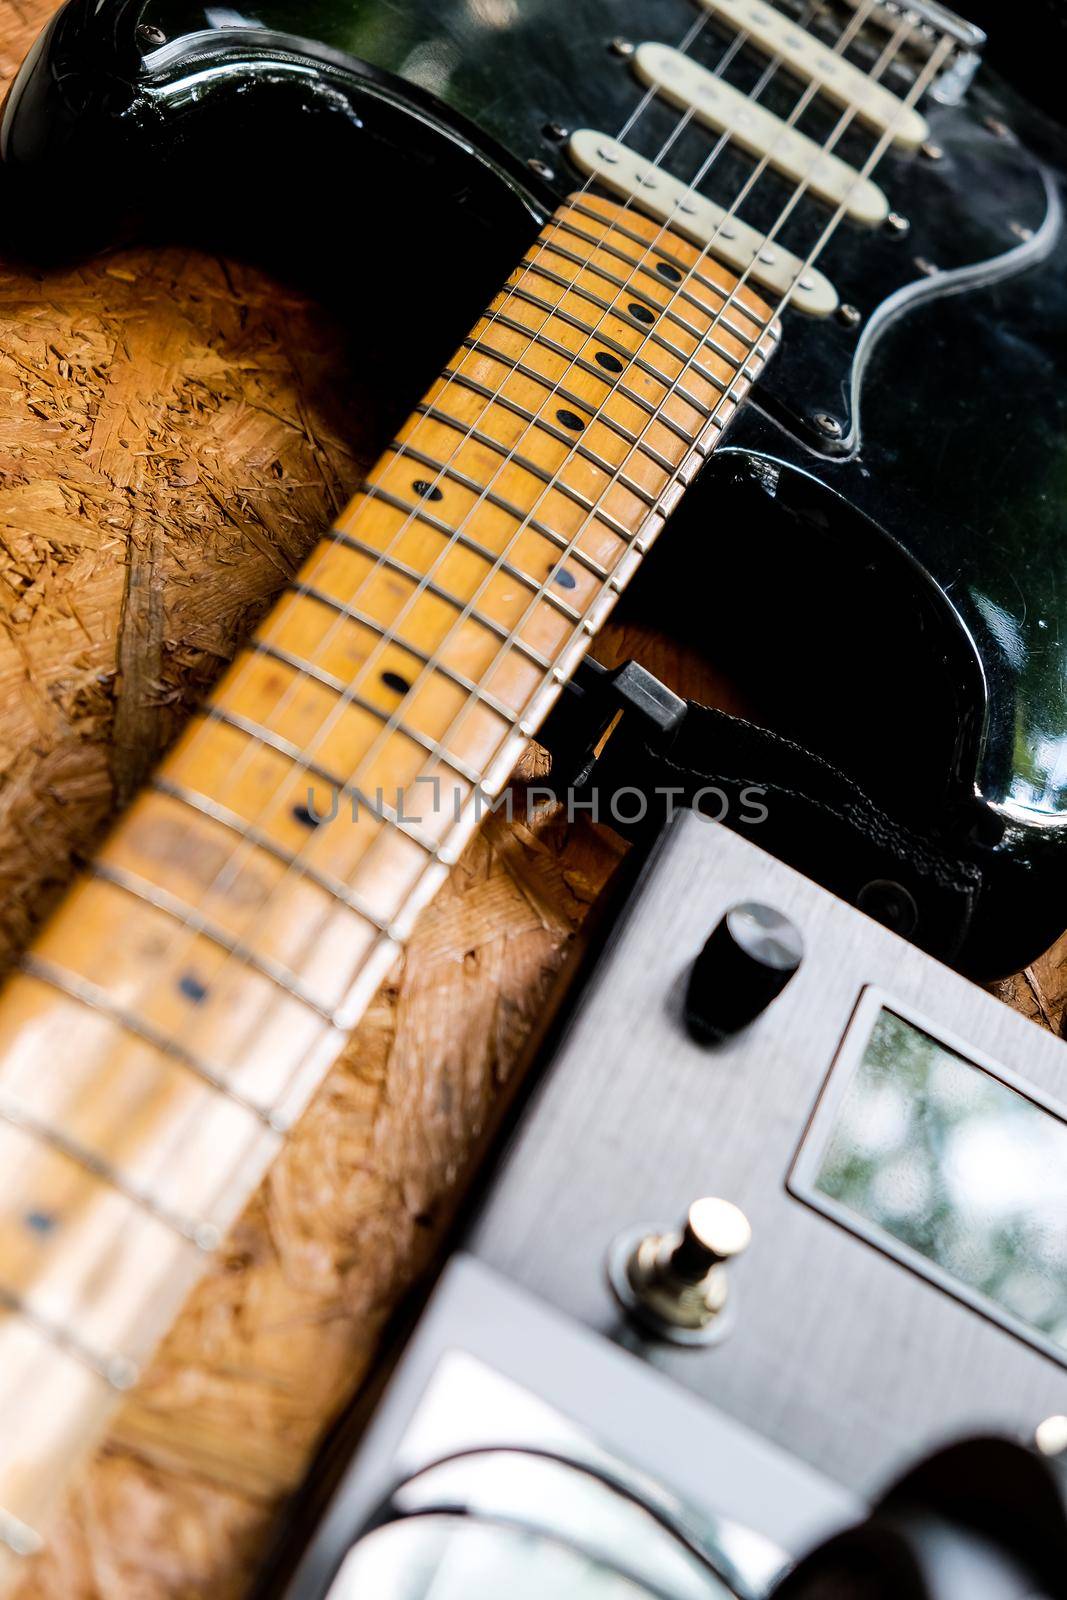 Guitar and music studio equipment by ponsulak